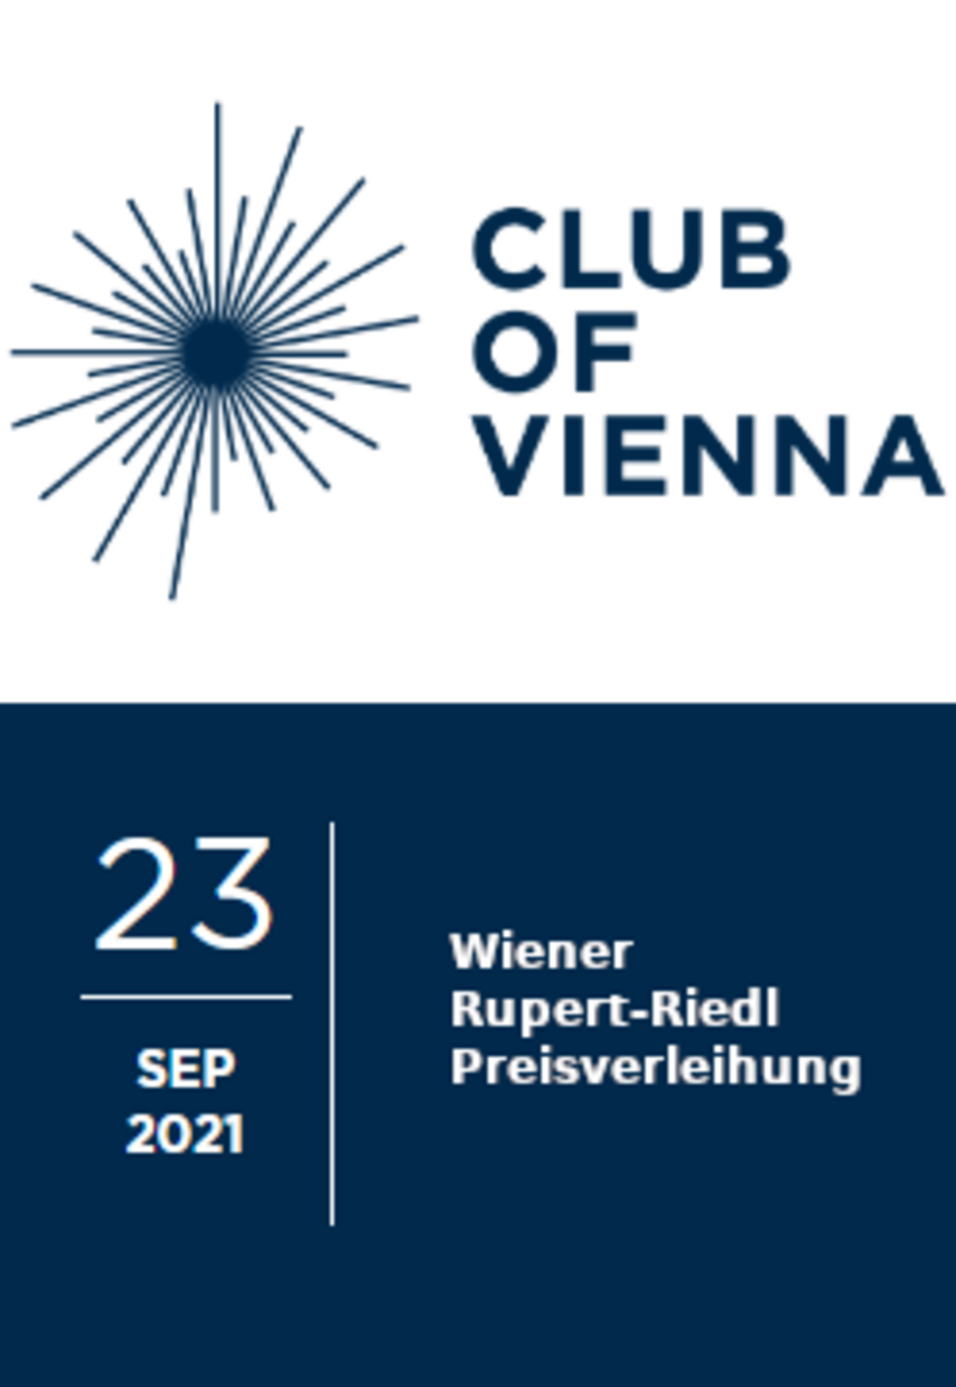 Logo des Club of Vienna (sonnenartig mit Strahlen, die von einem Kreis weggehen); 23. September: Rupert-Riedl-Preisverleihung